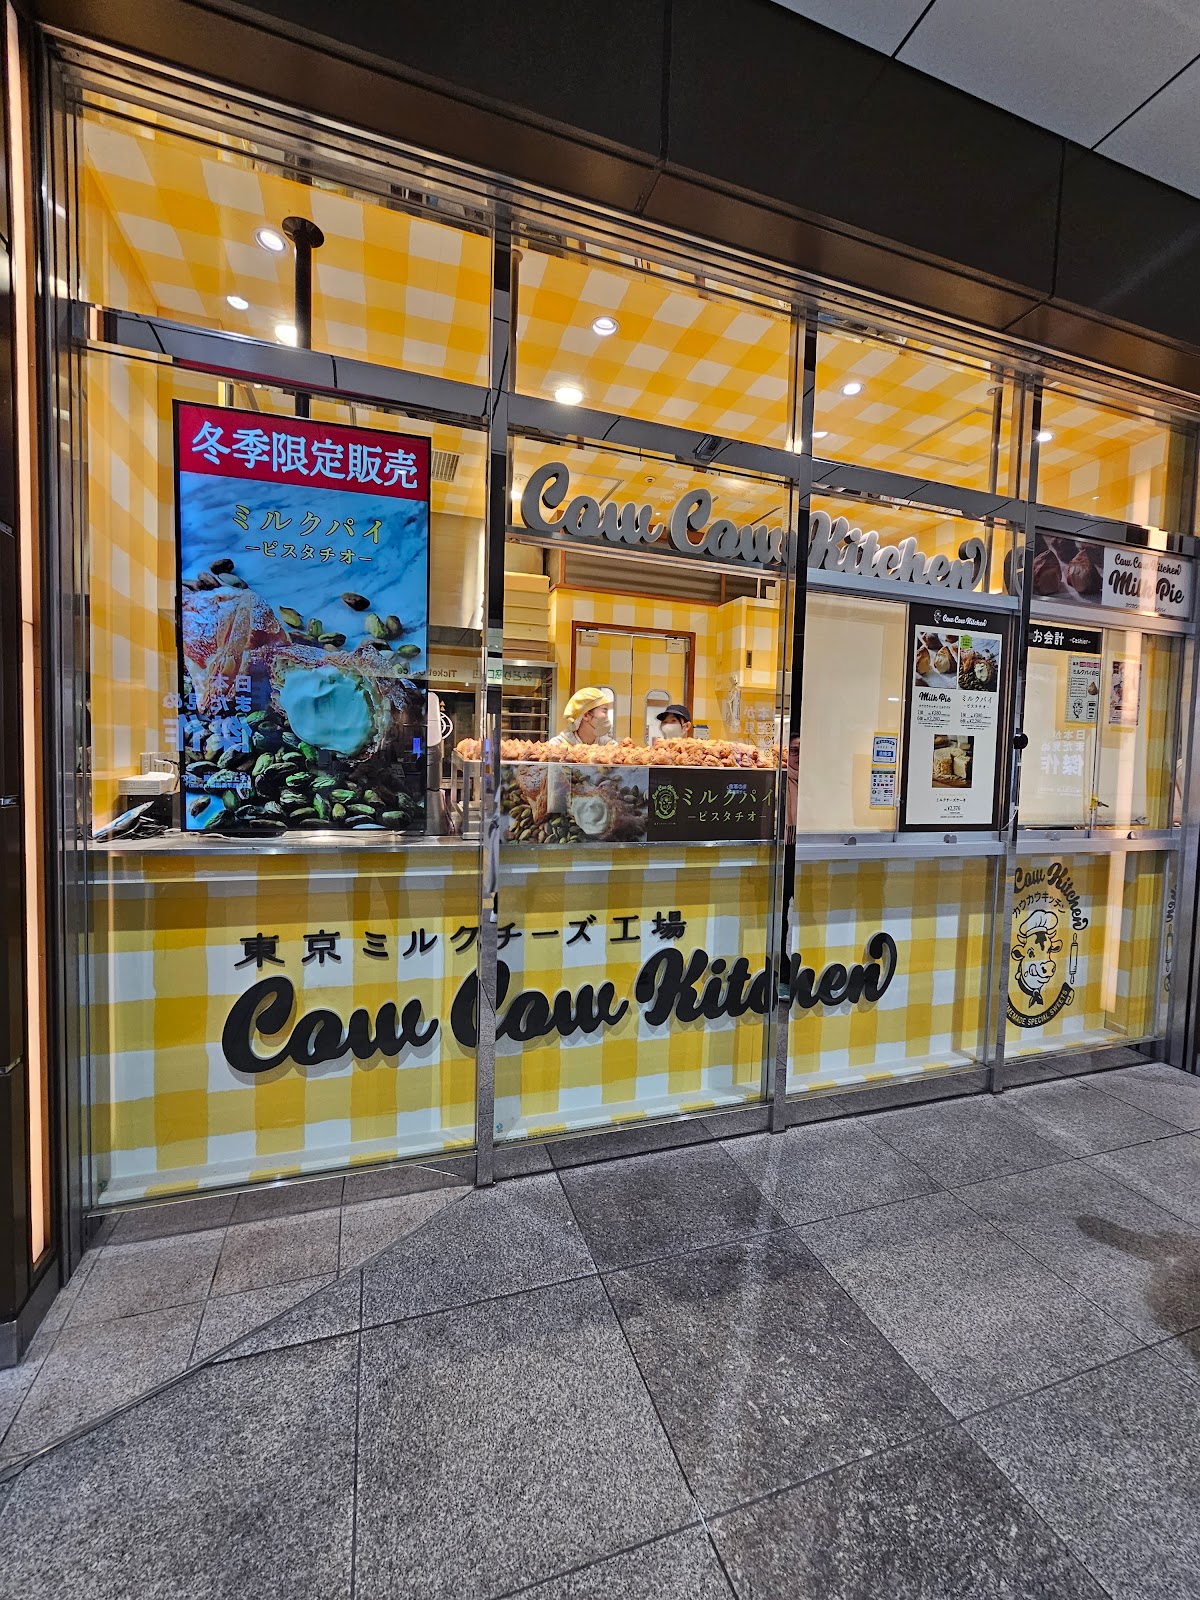 東京ミルクチーズ工場 Cow Cow Kitchen アトレ秋葉原1店のイメージ